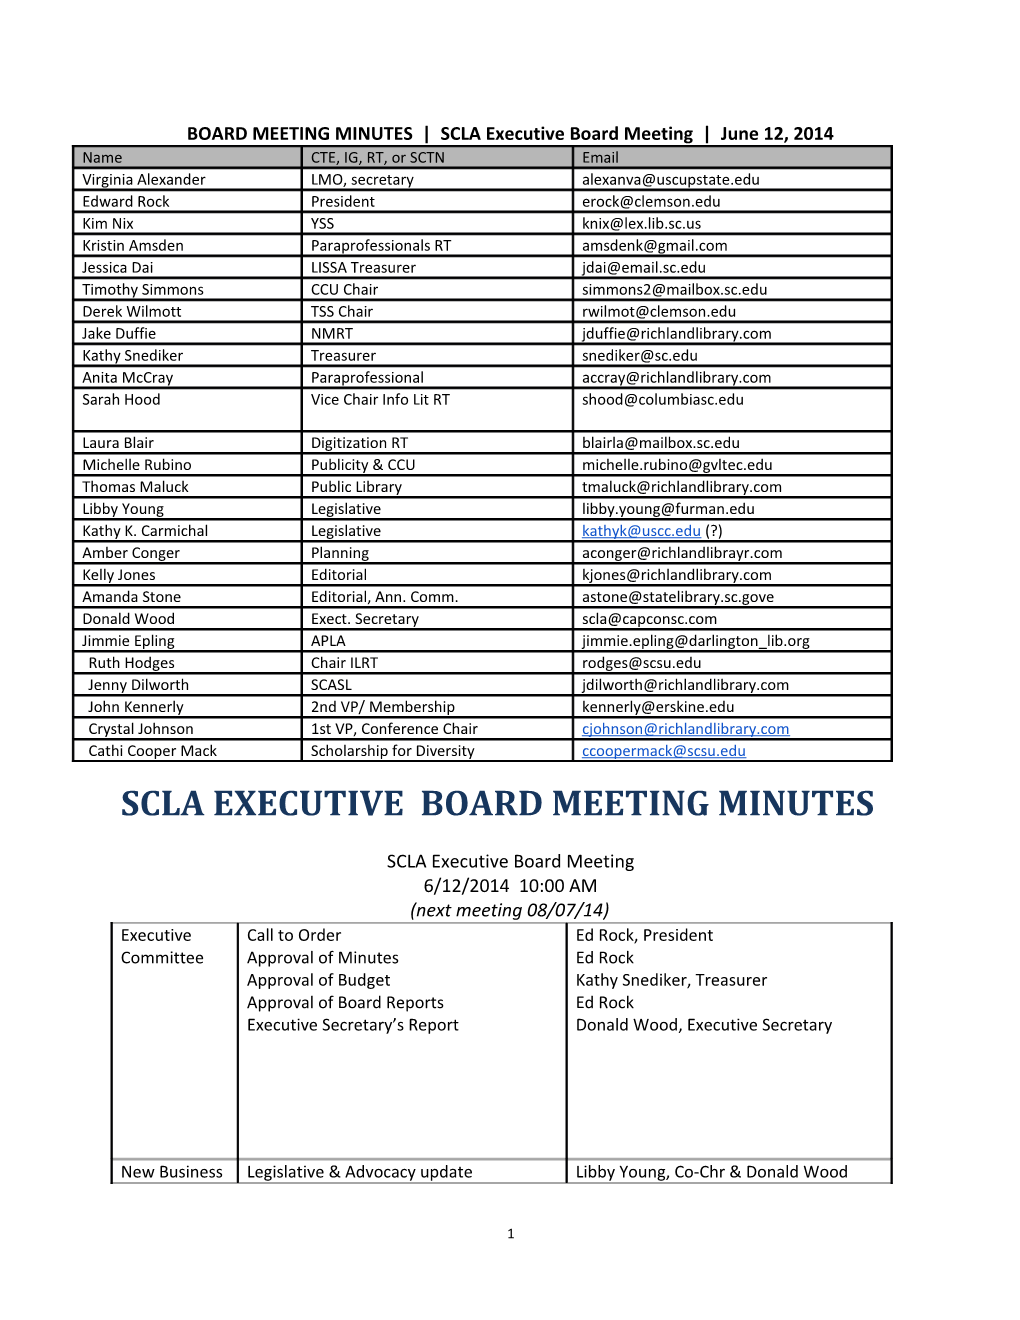 SCLA Board Minutes 6.12.2014